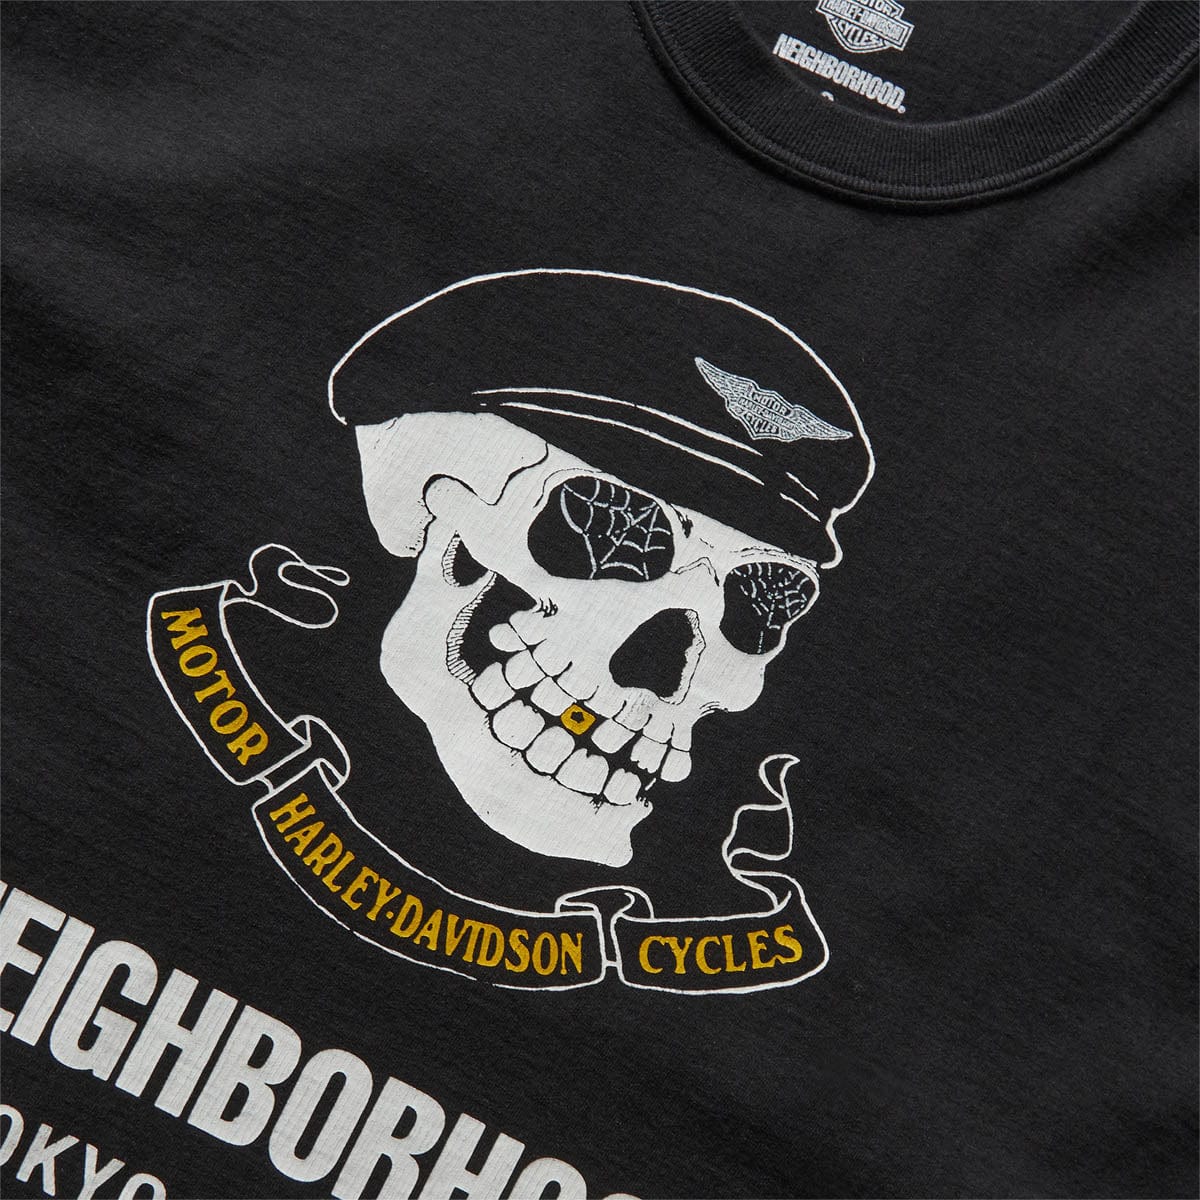 NEIGHBORHOOD T-Shirts H-D T-Shirt